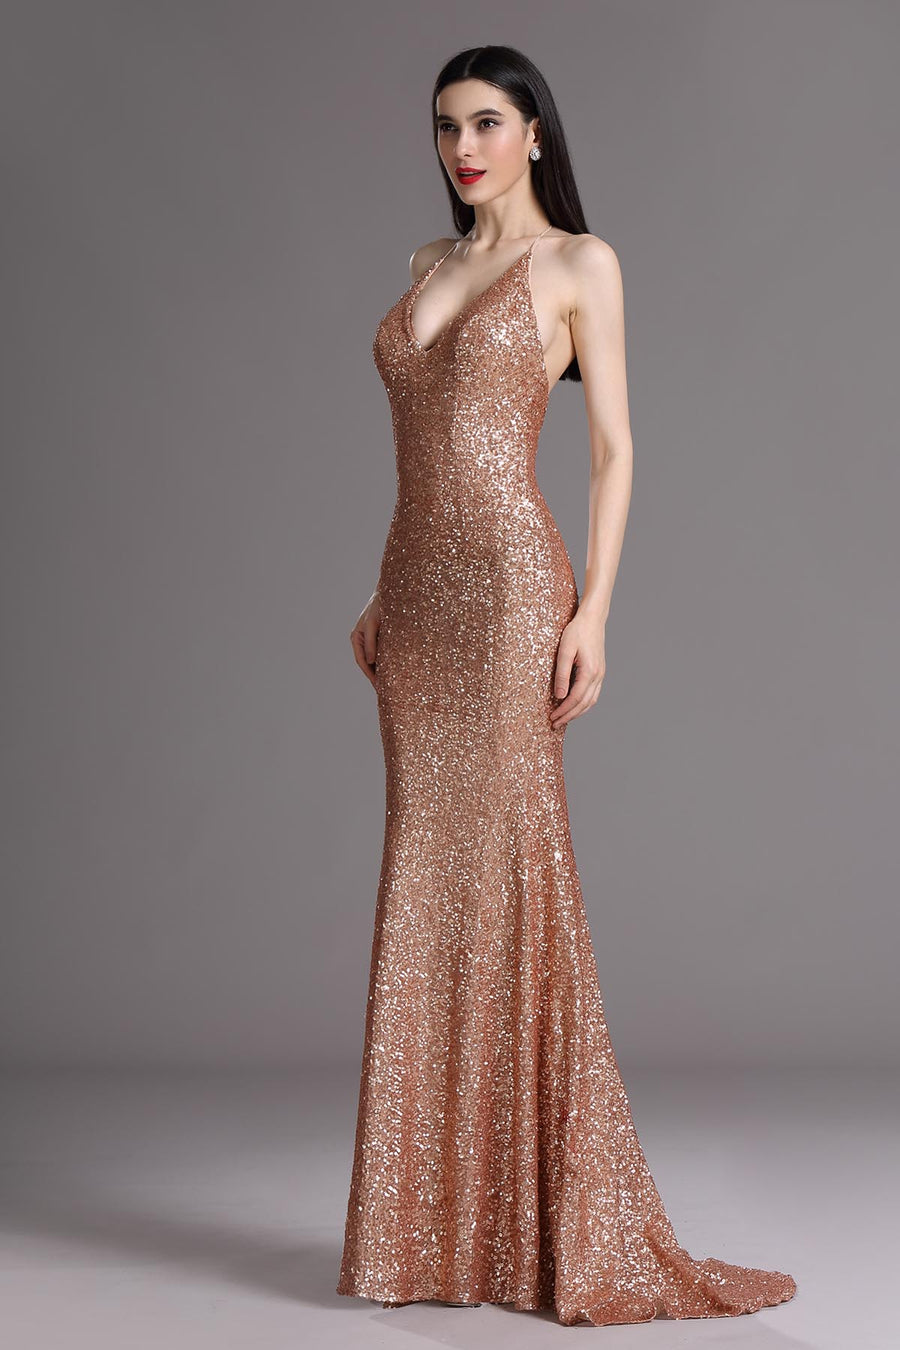 Mermaid/Trumpet Halter Sleeveless Full Length Sequined Promo Dresses